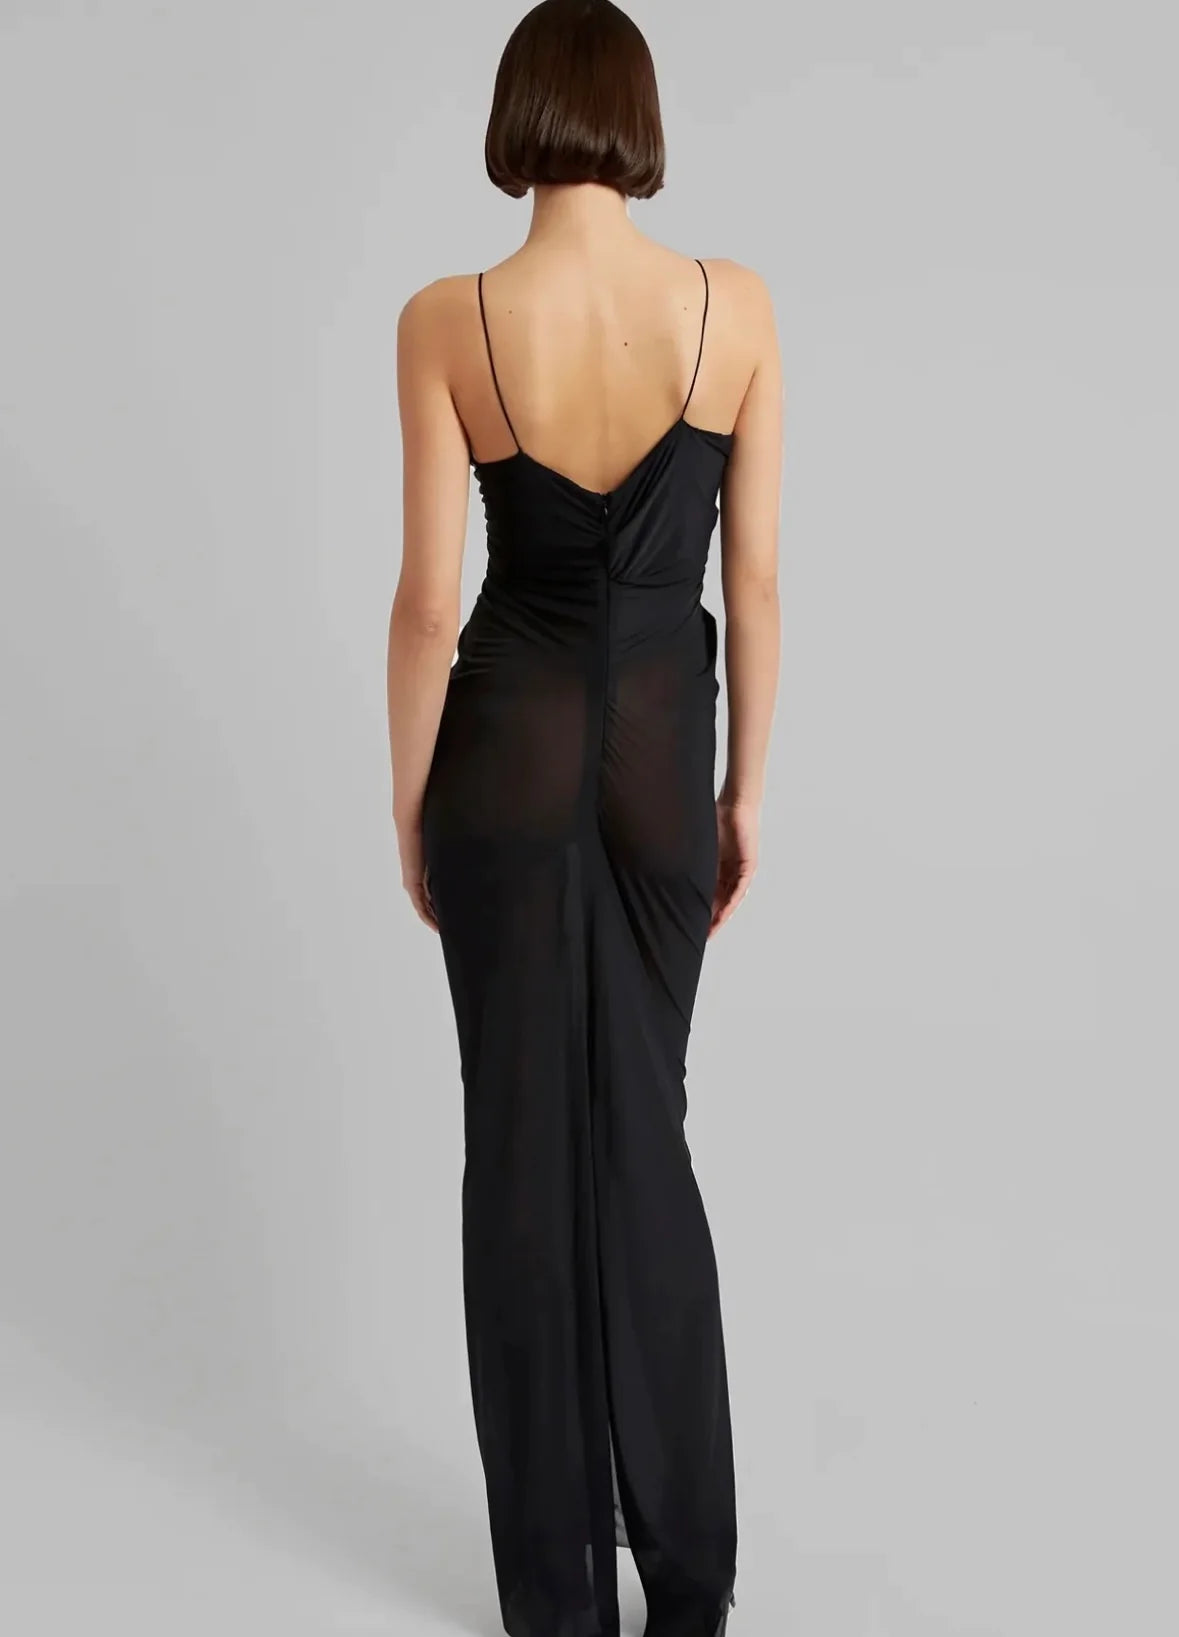 Molded Venus Dress (Black)